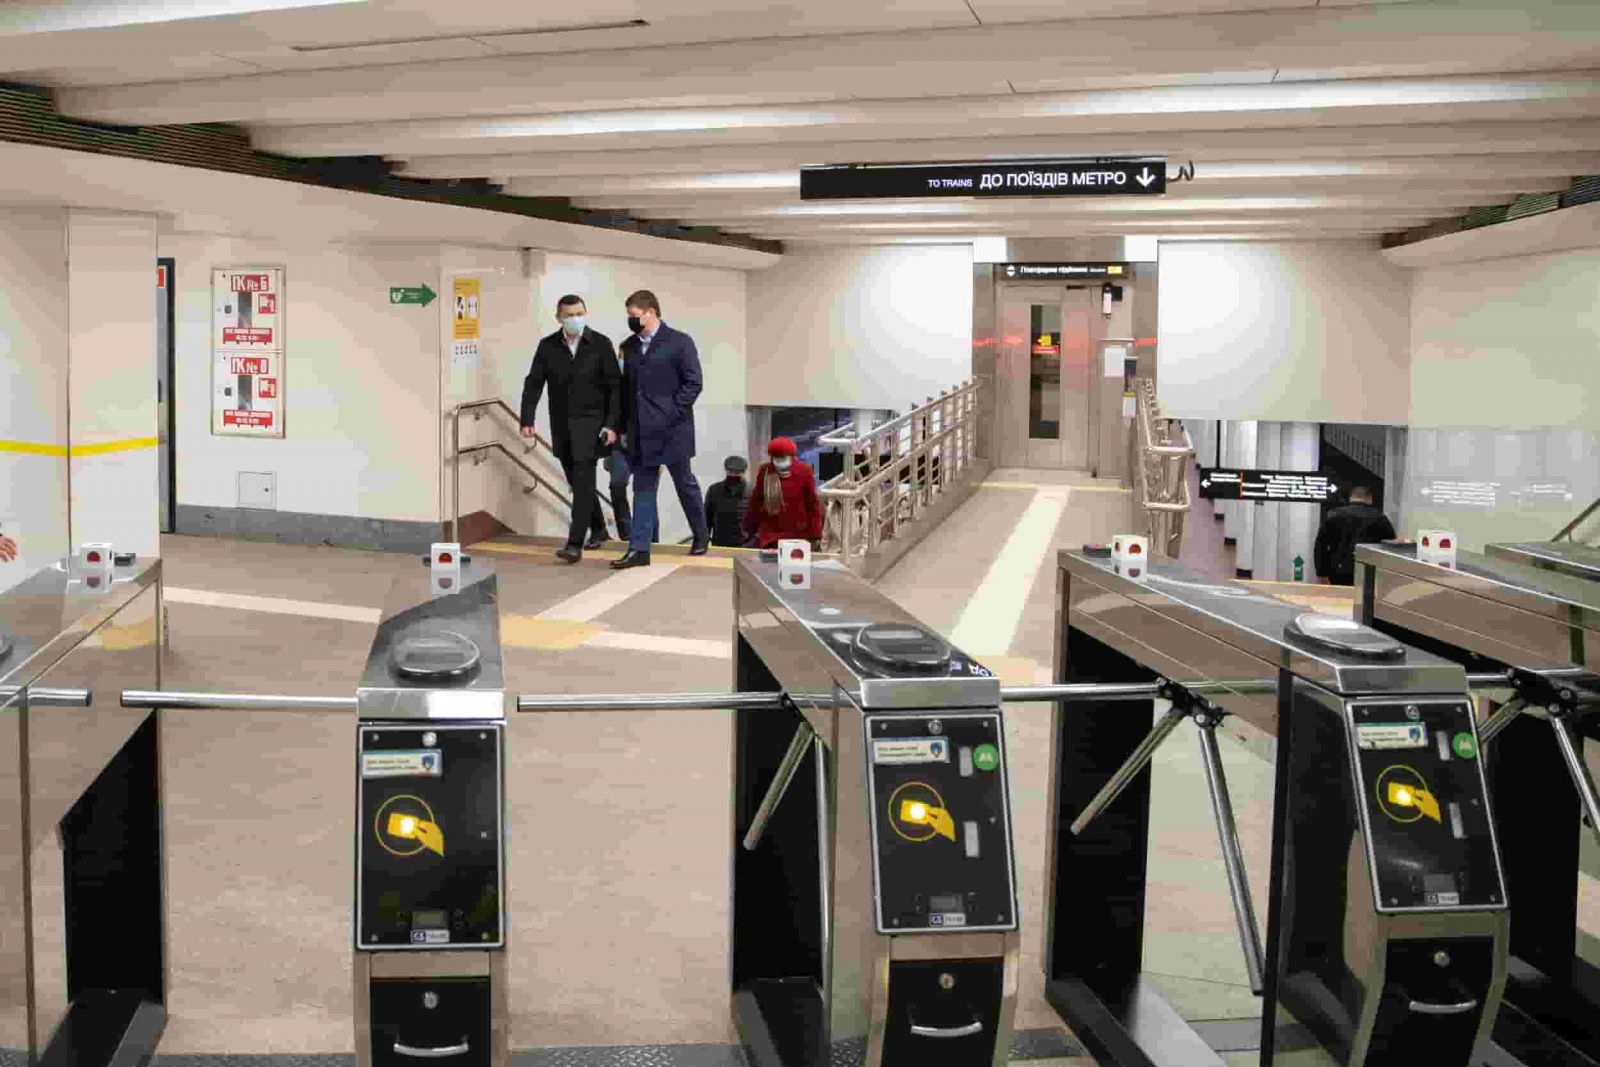 На станции киевского метро “Нивки” готовится масштабная реконструкция по программе доступности